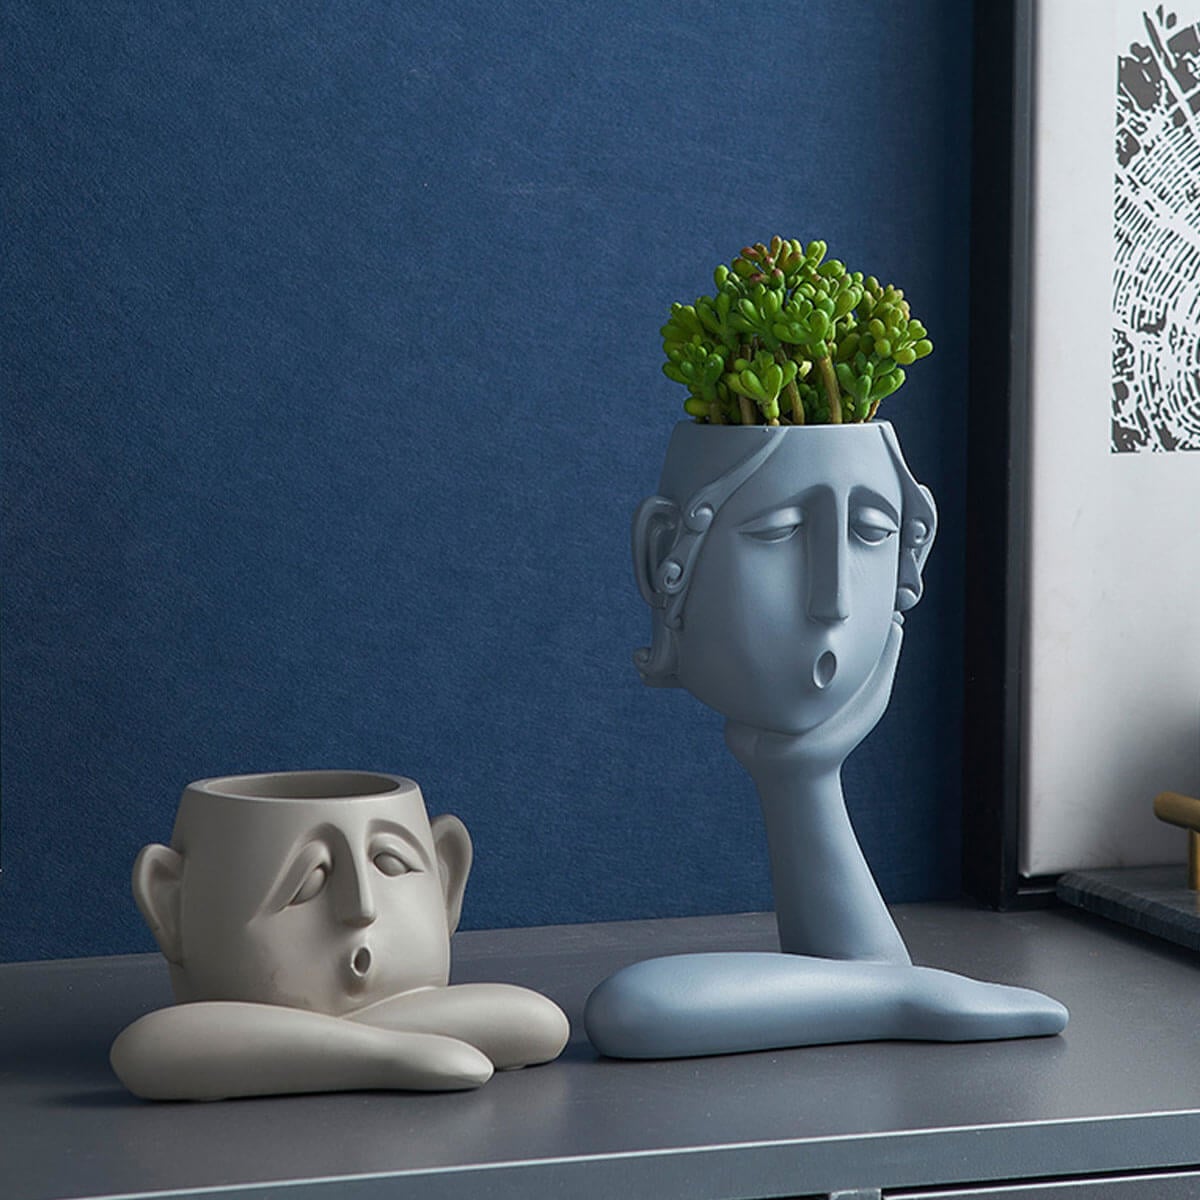 Decoration Vase Family Faces Portrait Head Sculpture